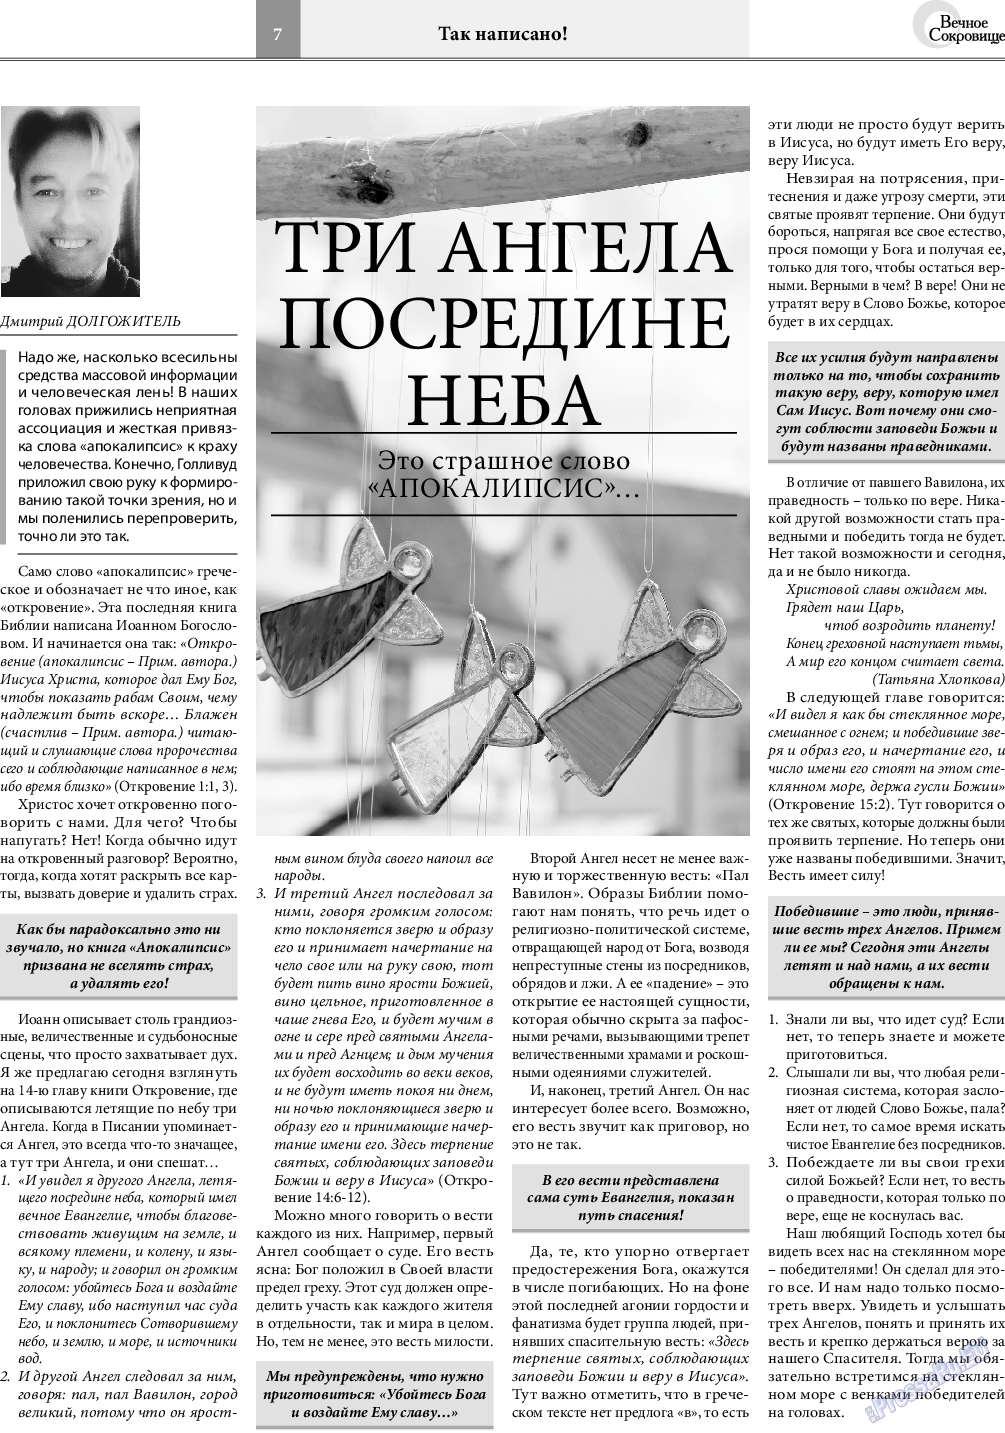 Вечное сокровище, газета. 2020 №3 стр.7